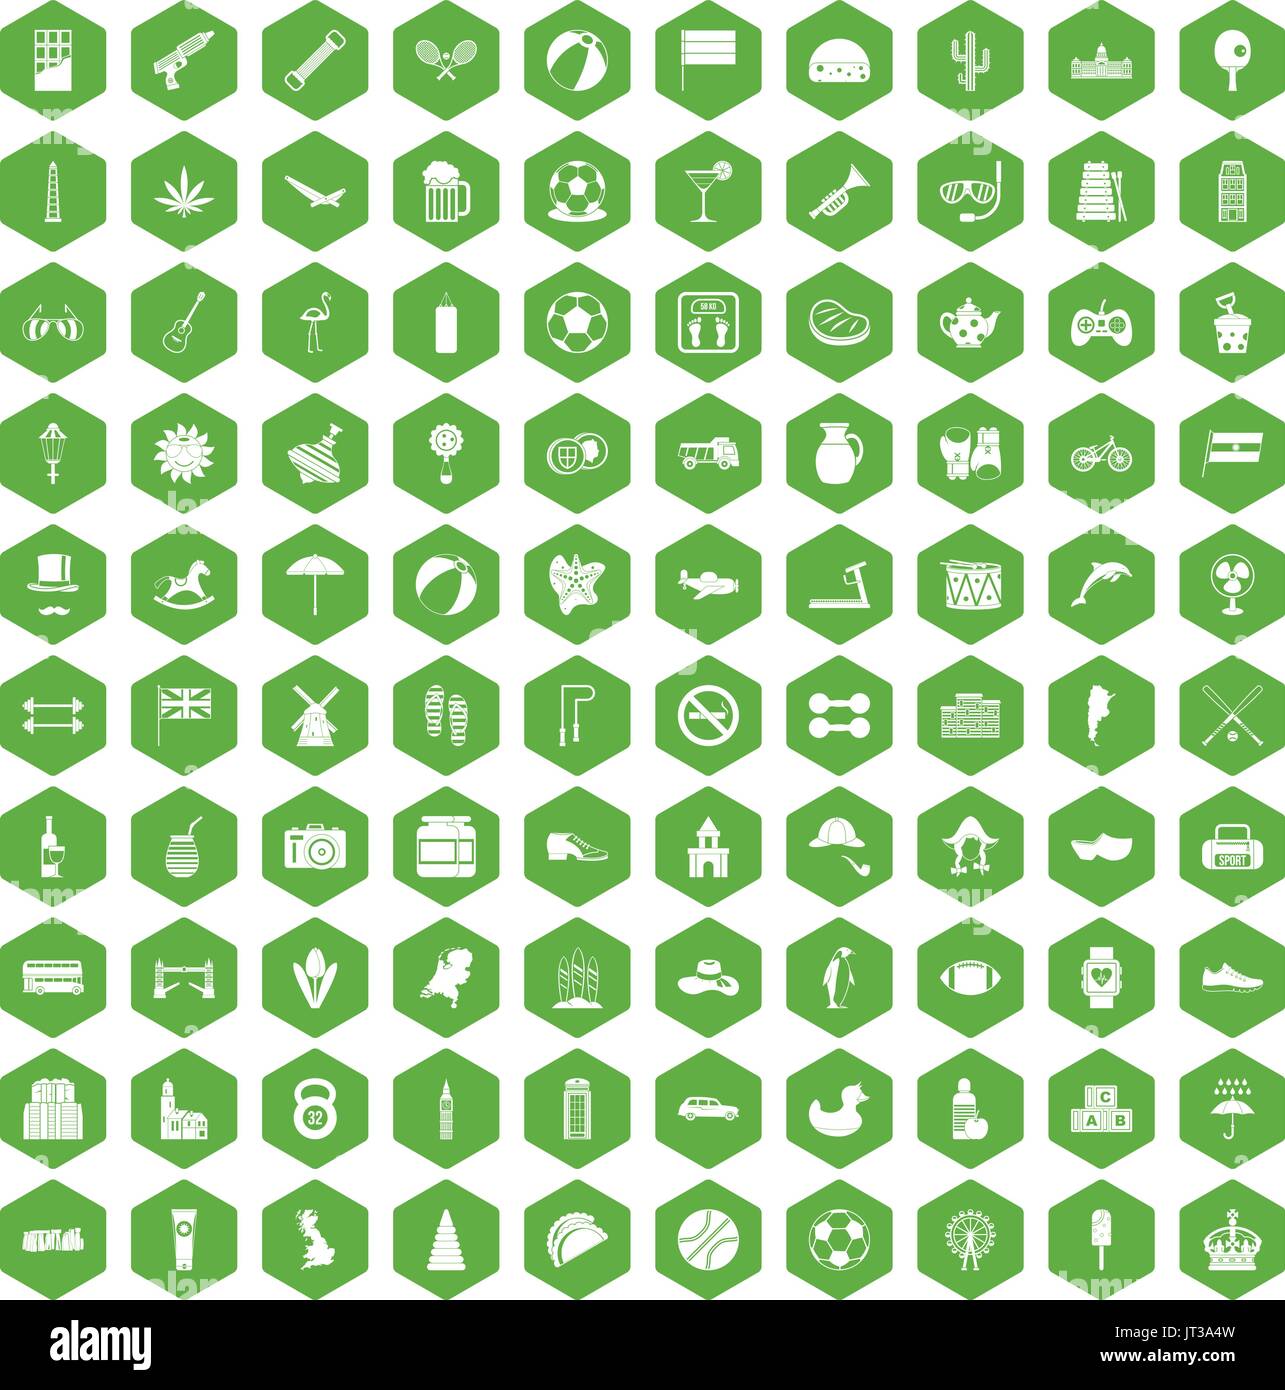 100 ball icons hexagon green Stock Vector